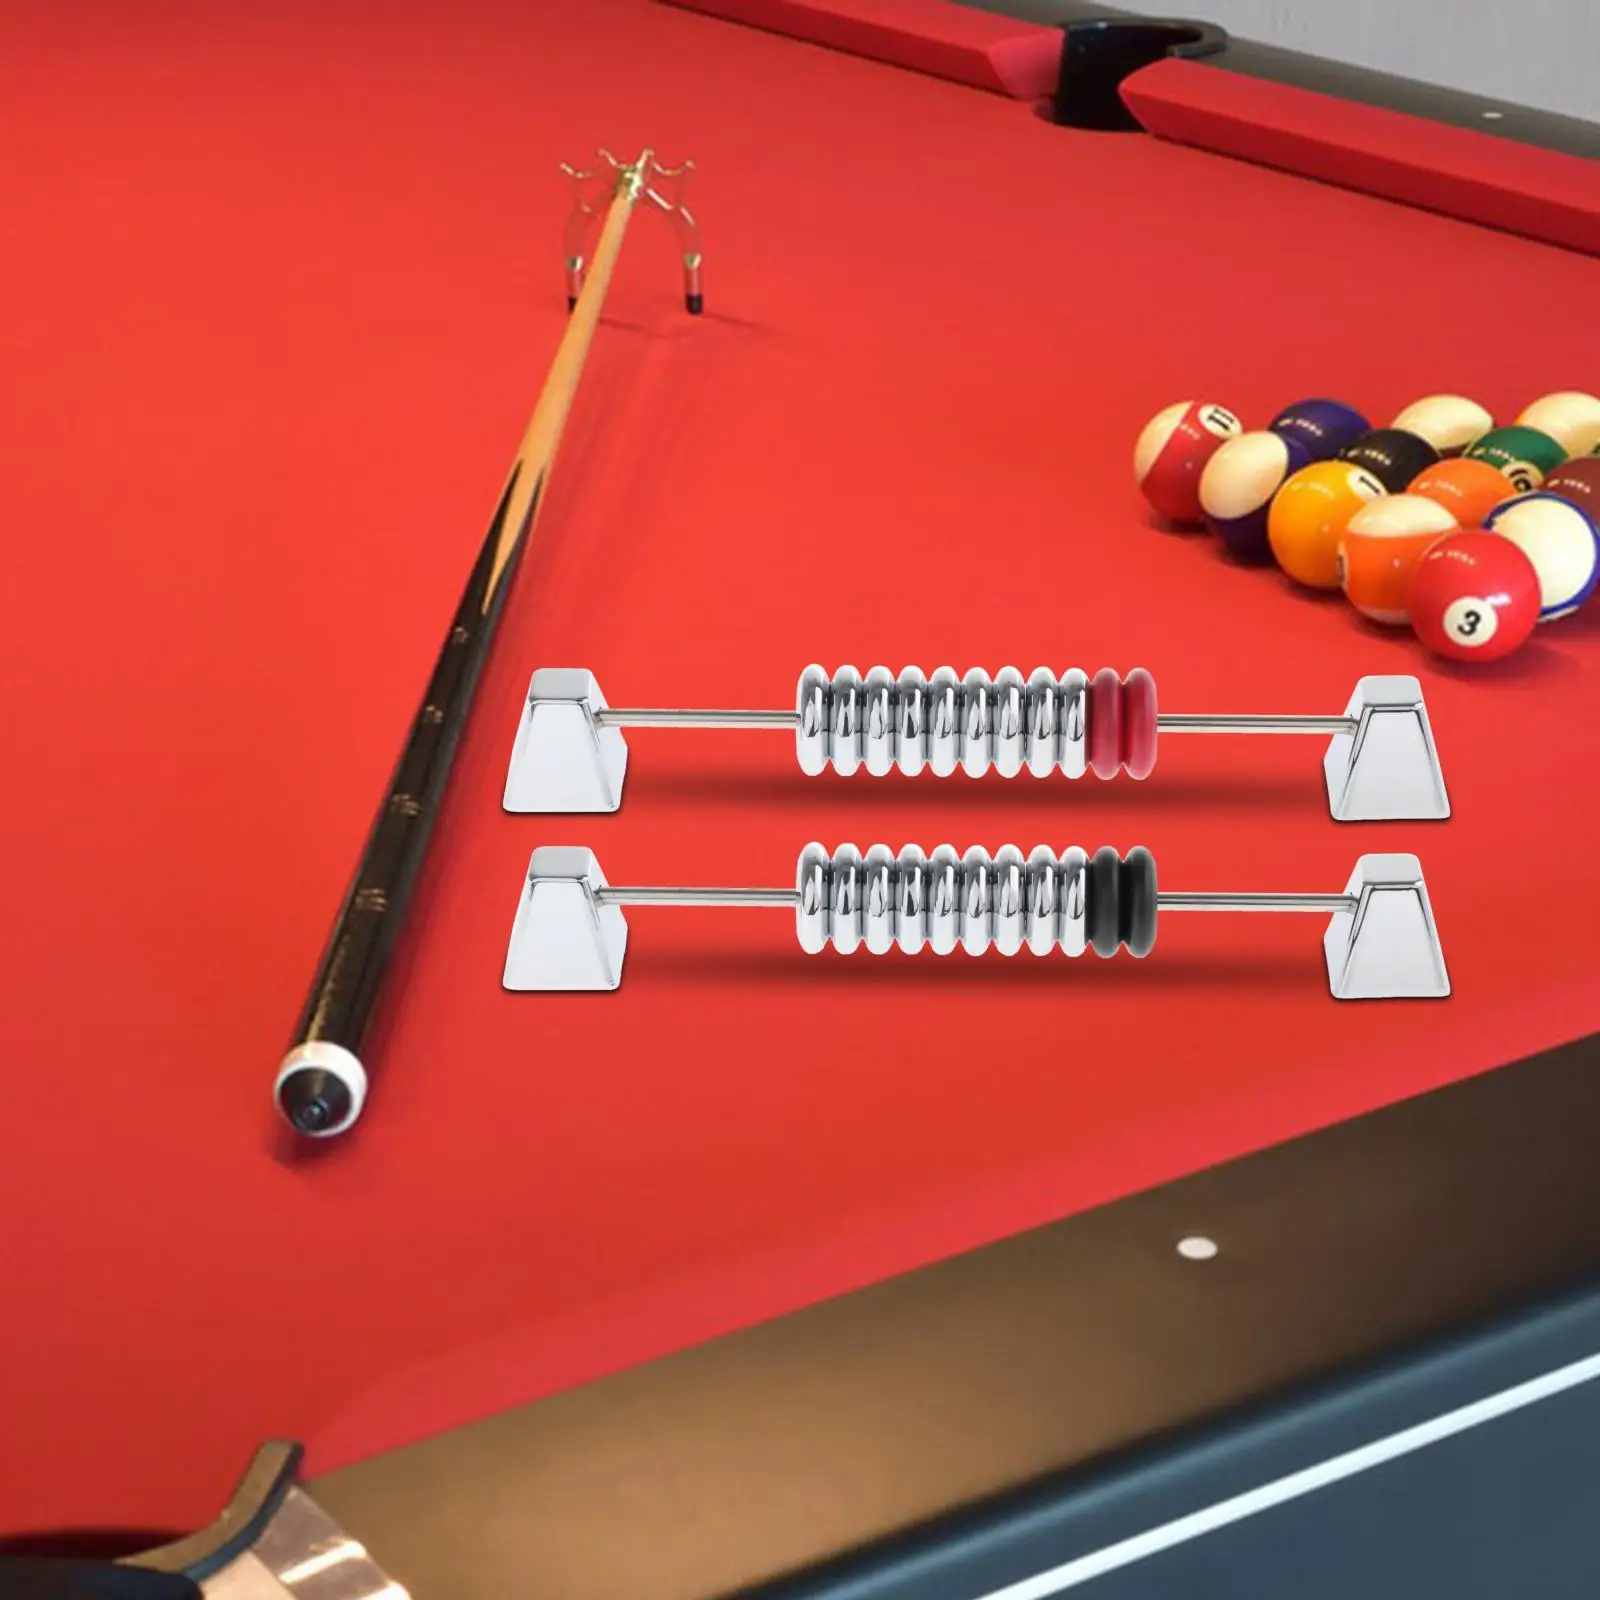 2x Shuffleboard Score Keeper Snooker Billiard Score Board for Tabletop Games Shuffleboard Tables